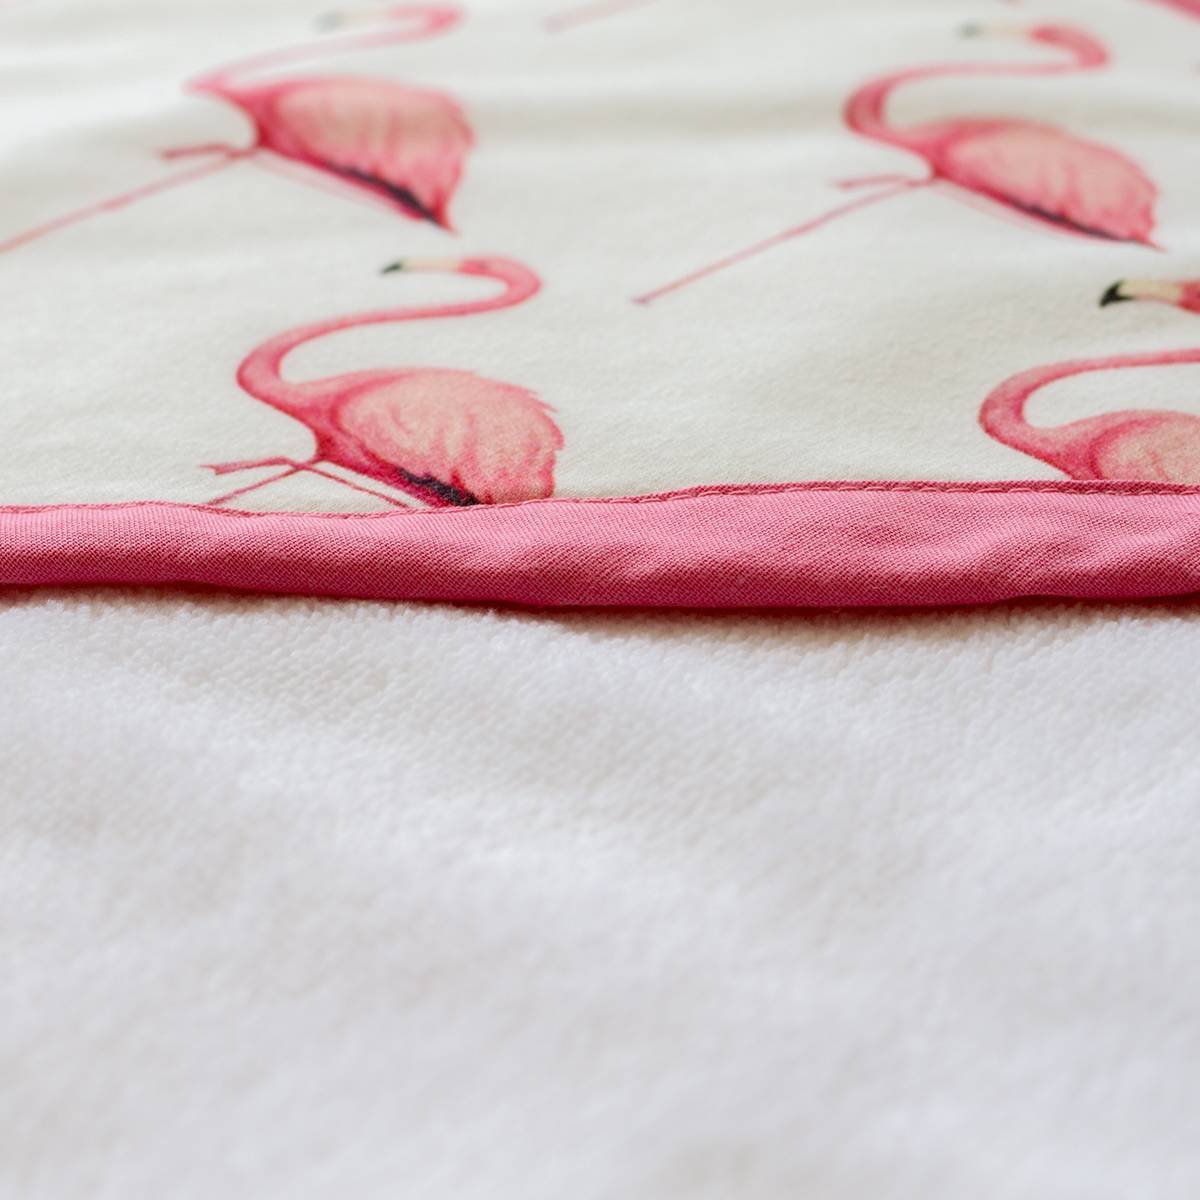 Capucha de la toalla de bebe de LokitosKids con dibujos de flamenco y un borde rosa pastel